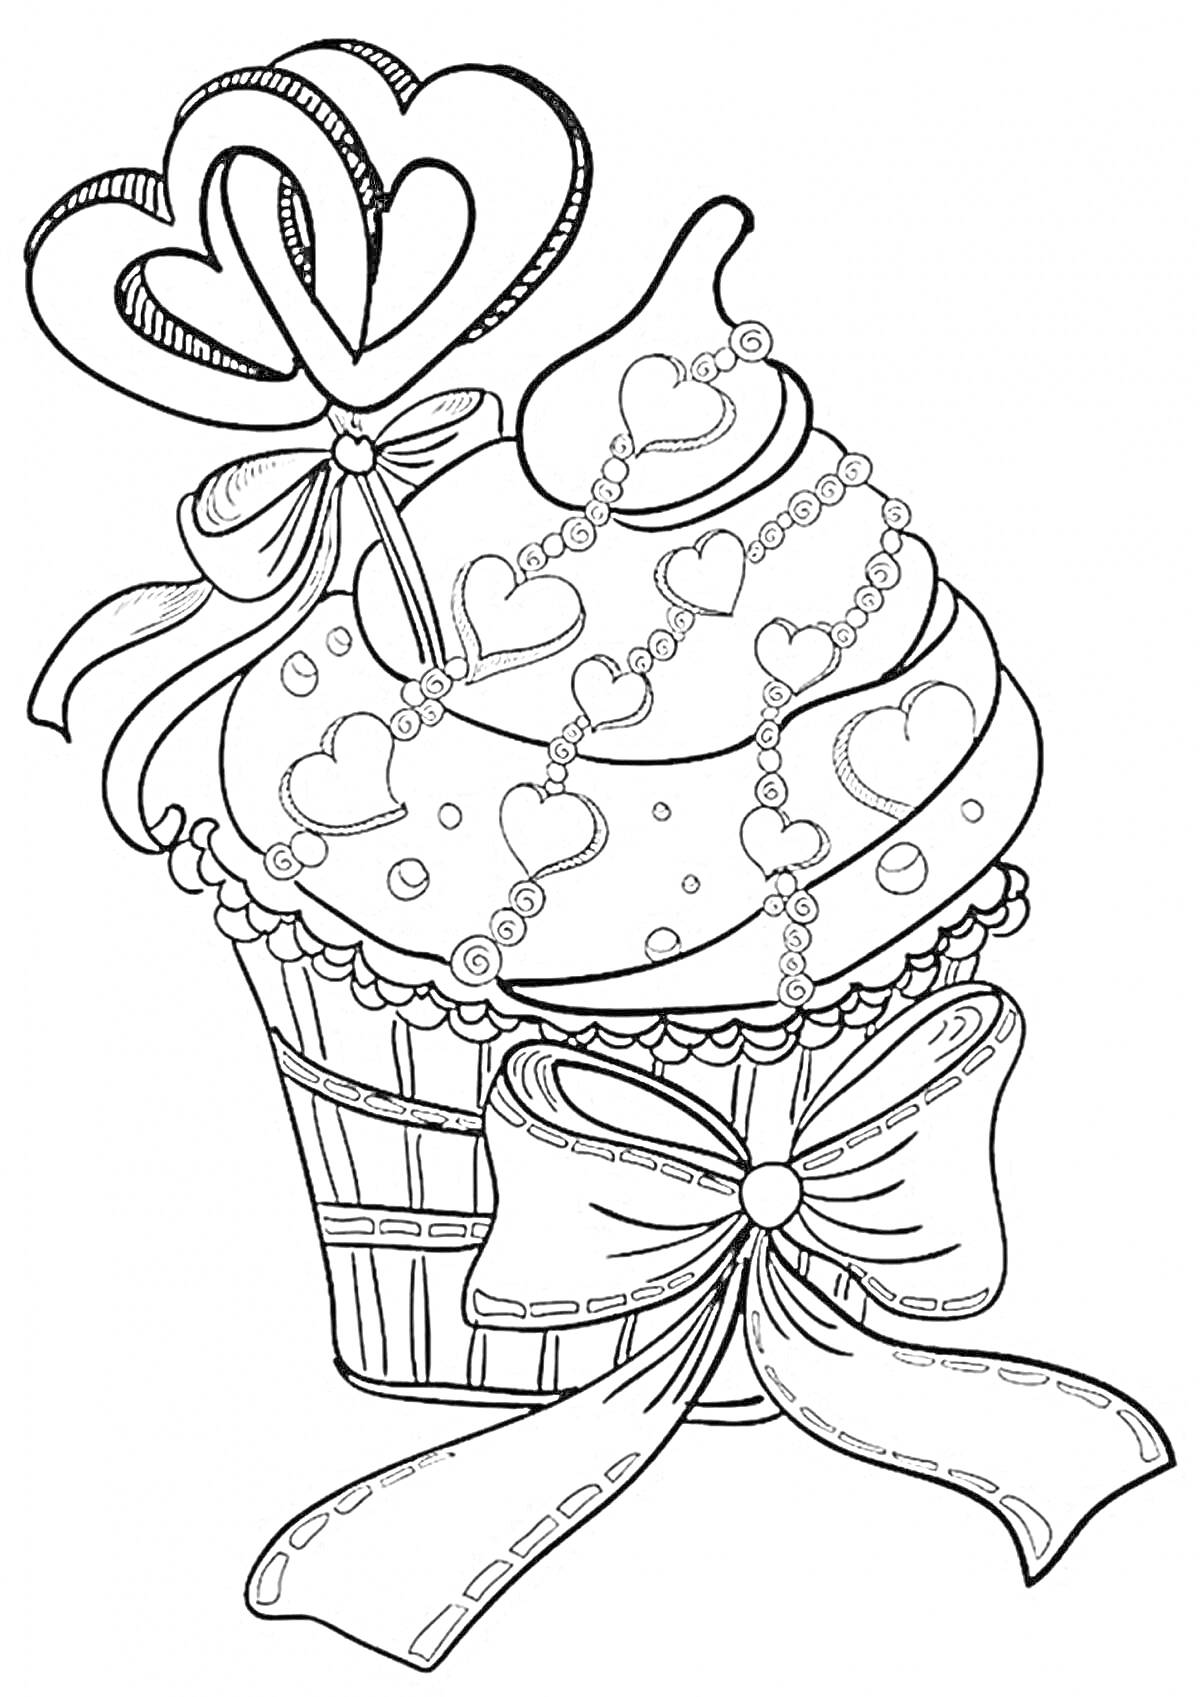 Раскраска Кекс с леденцом в форме сердца, бантами и украшениями в виде сердец и бусинок